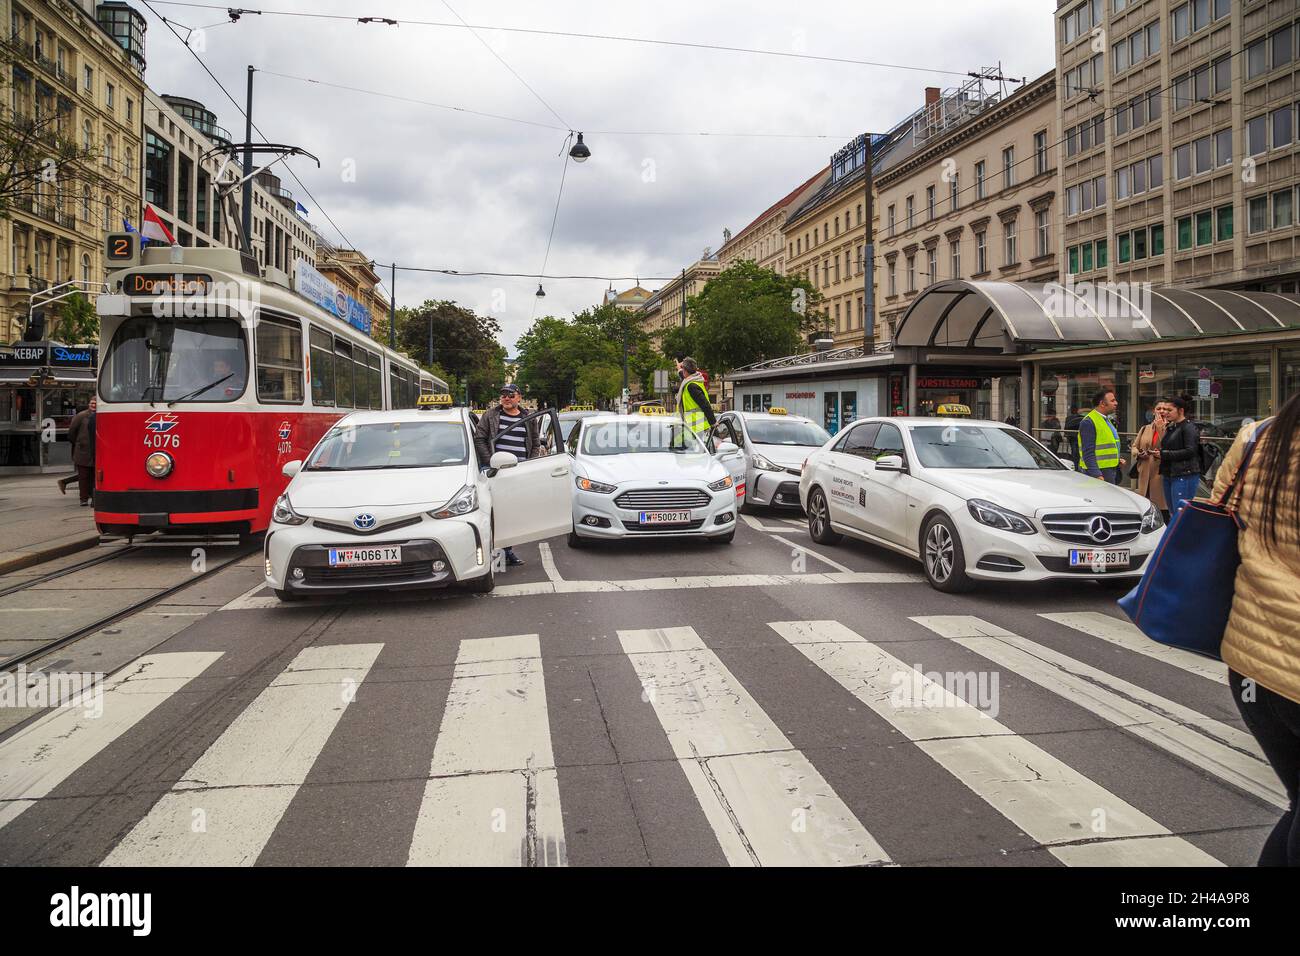 VIENNE, AUTRICHE - 16 MAI 2019 : il s'agit d'un effondrement de la circulation sur l'avenue Ring lors de la grève des chauffeurs de taxi. Banque D'Images